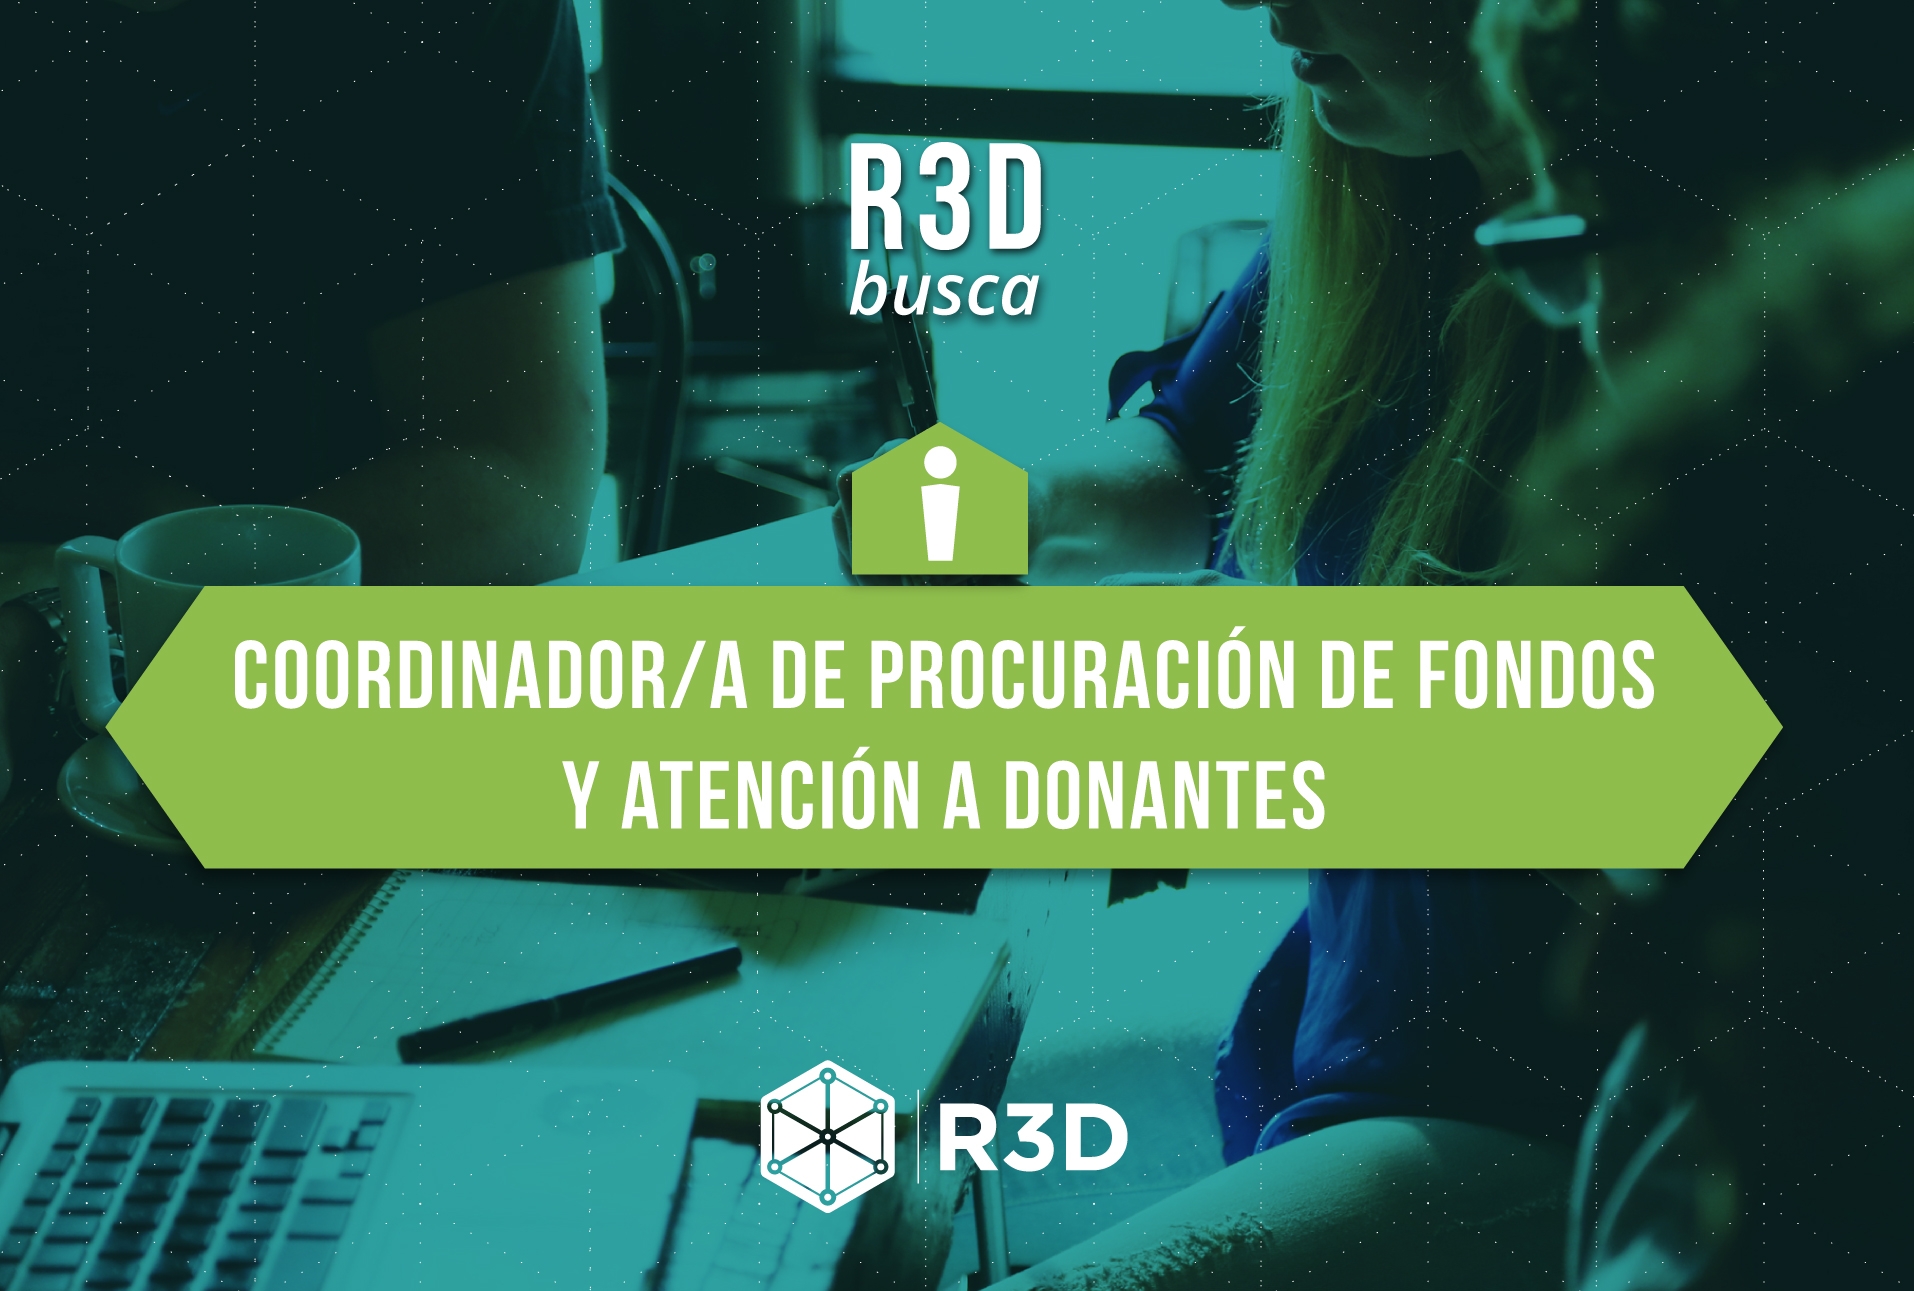 R3D busca Coordinador/a de Procuración de Fondos y Atención a Donantes